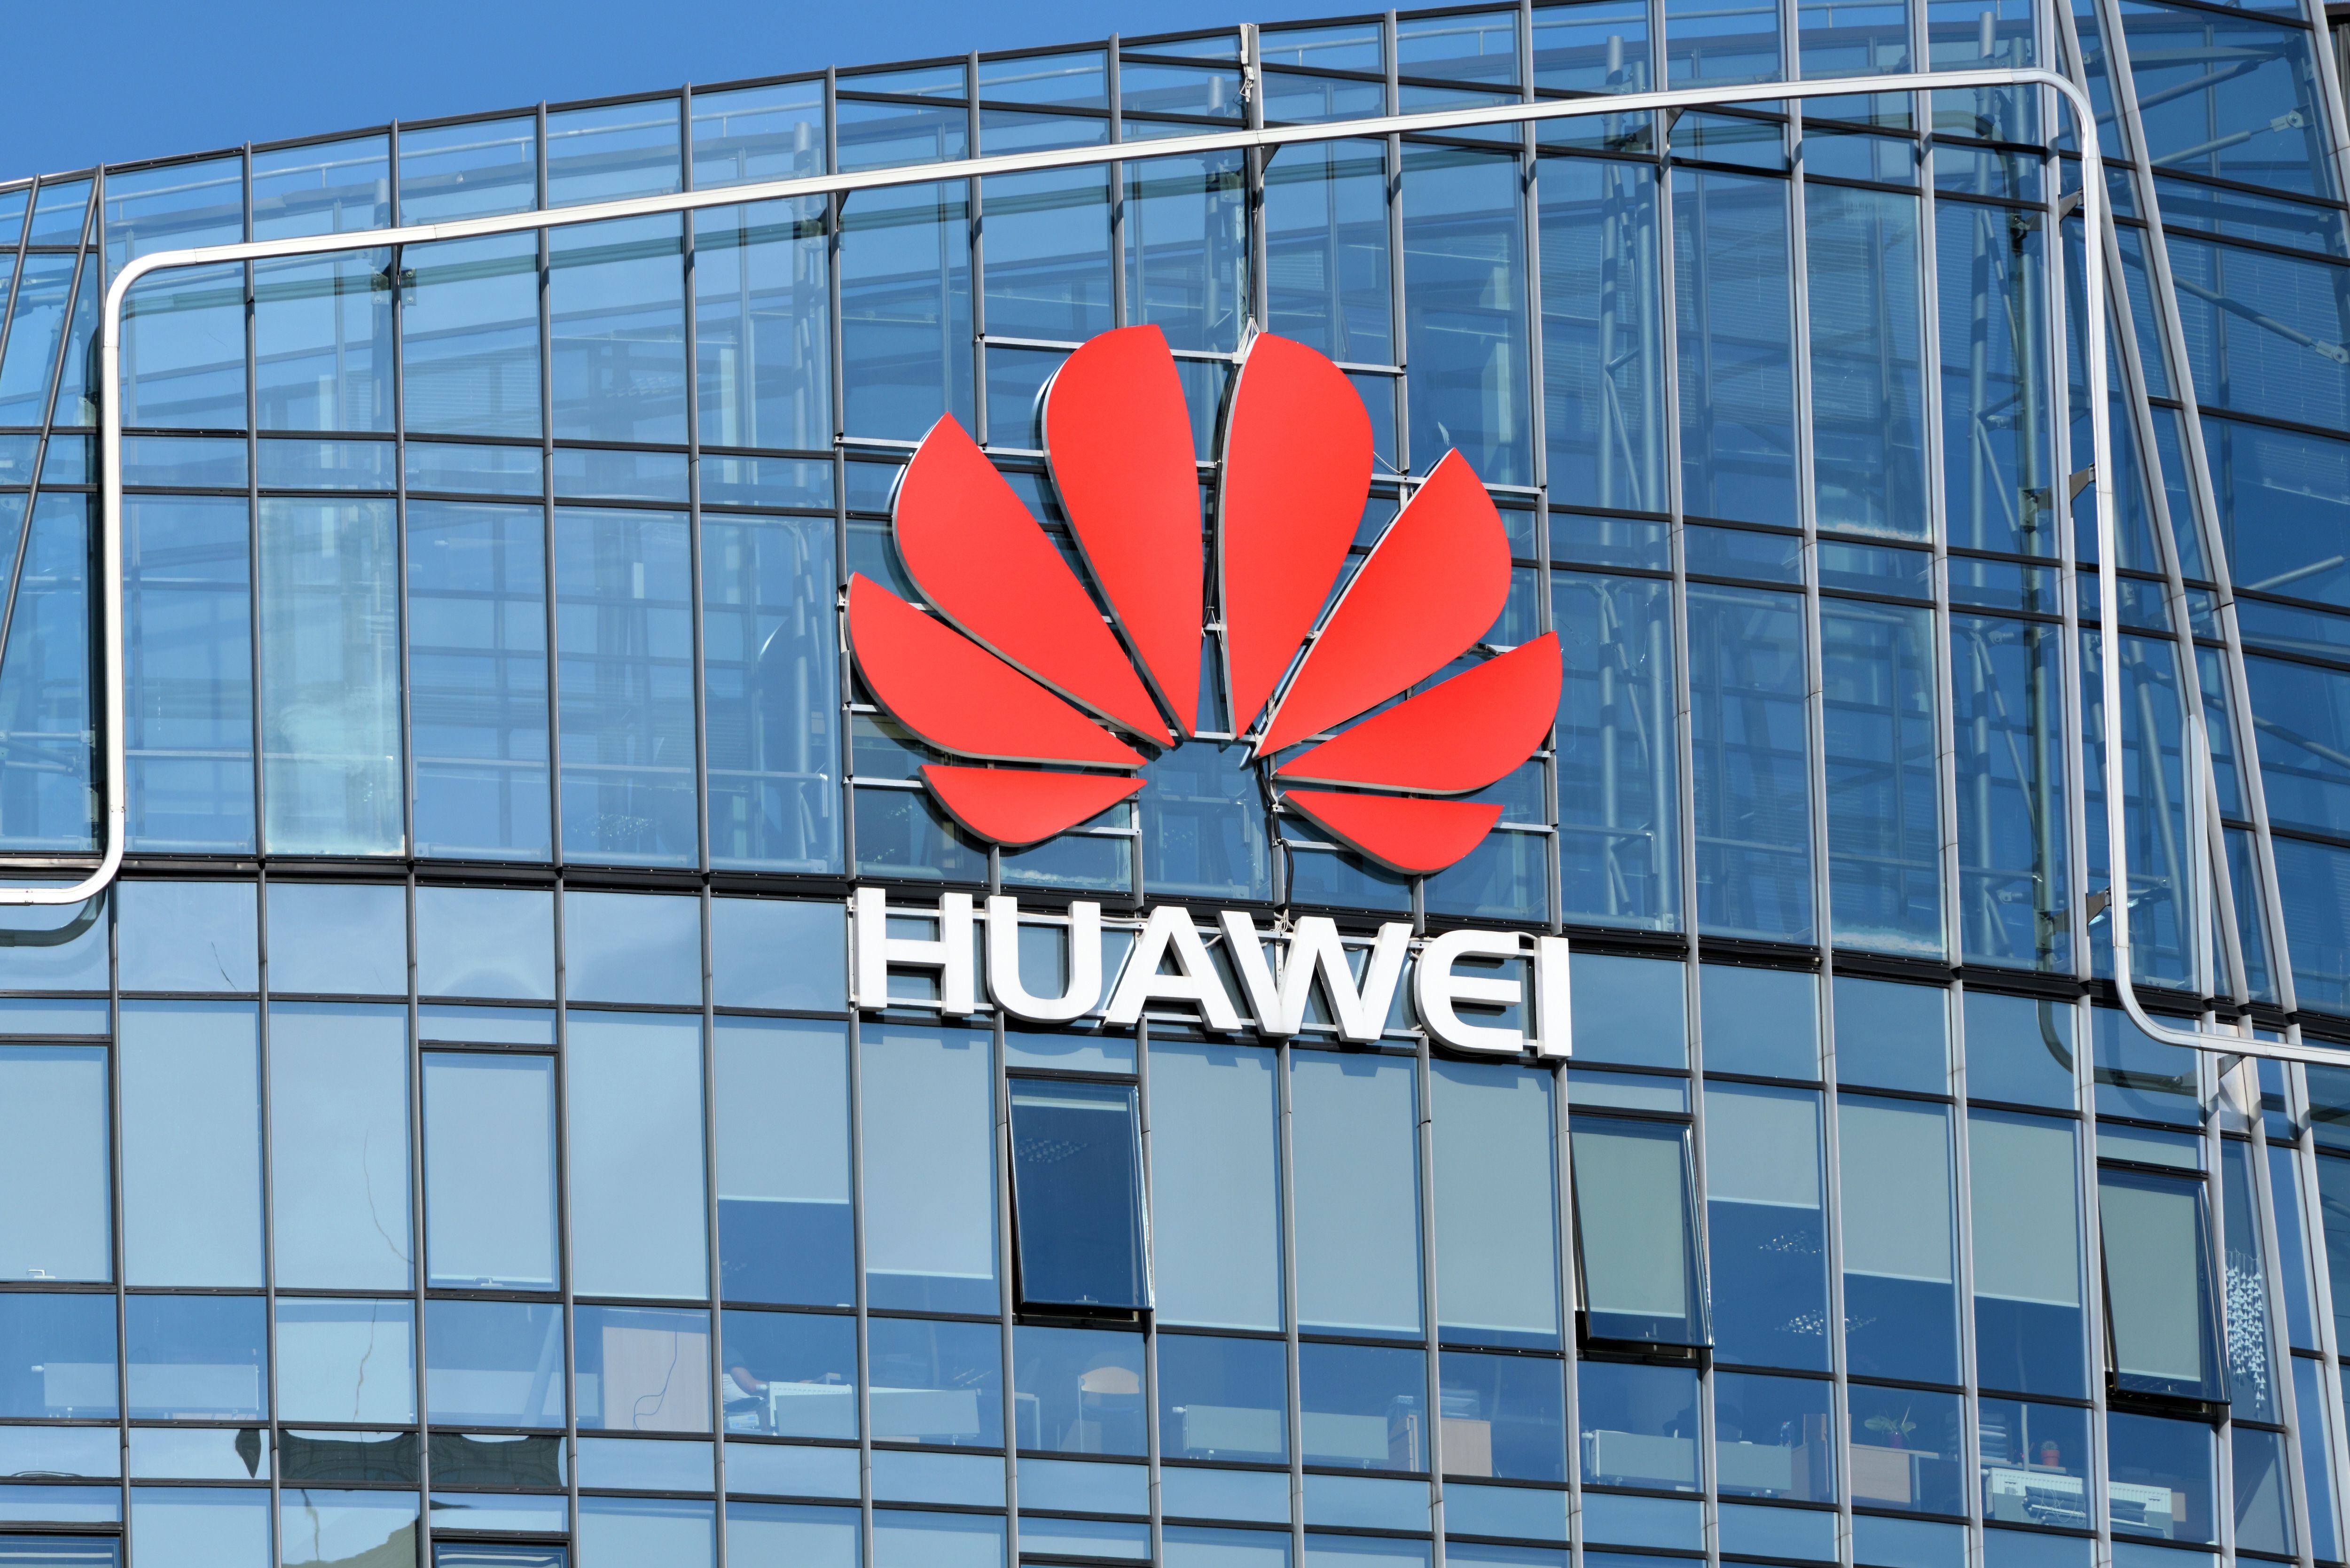 La empresa china Huawei realizó un evento para empleados del ICE,  el 26 de abril pasado. Fiscalía investiga si los  funcionarios cometieron un delito al participar. Shutterstock